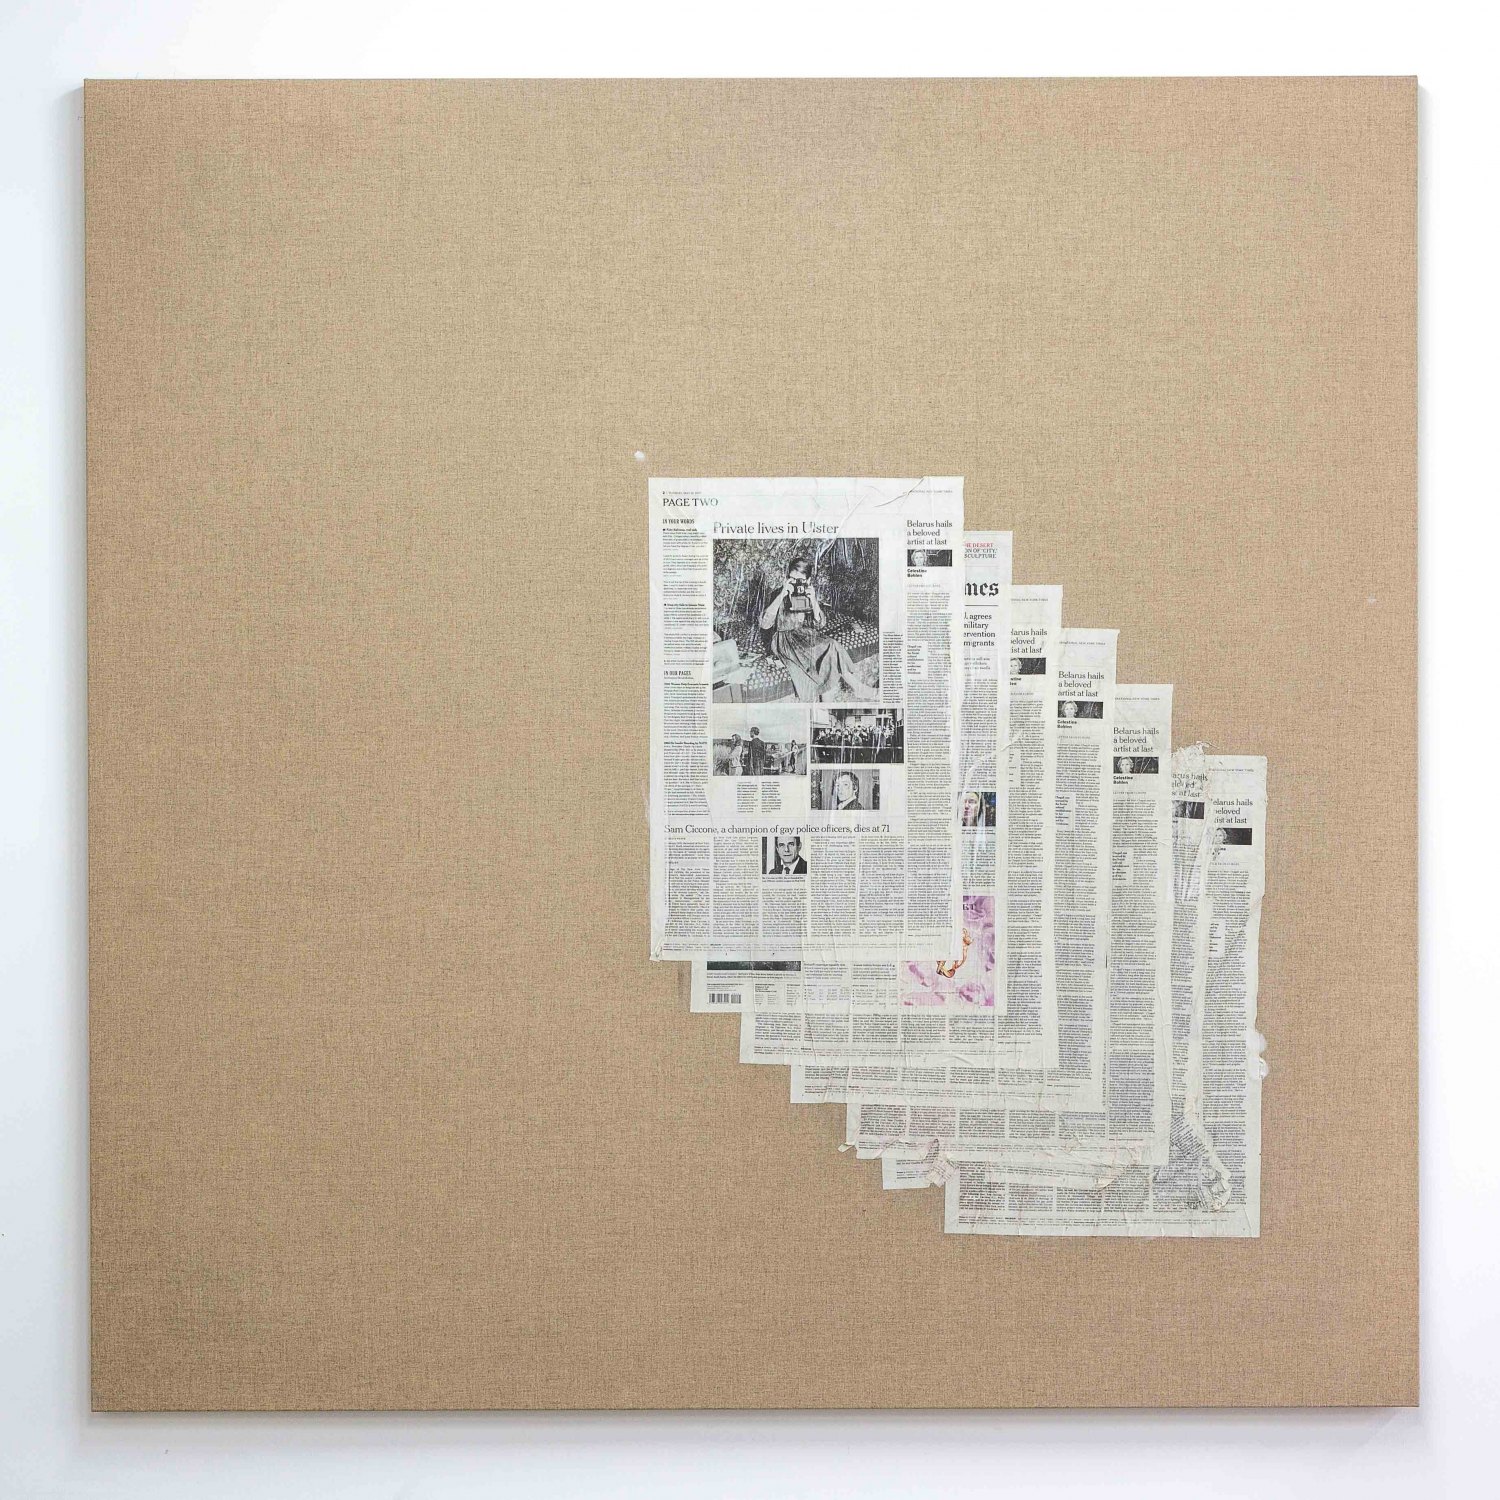 Matias Faldbakken Untitled (Canvas #106), 2015 Newspaper print on Belgian linen, wooden stretcher, 152.5 × 152.5 × 3.2 cm